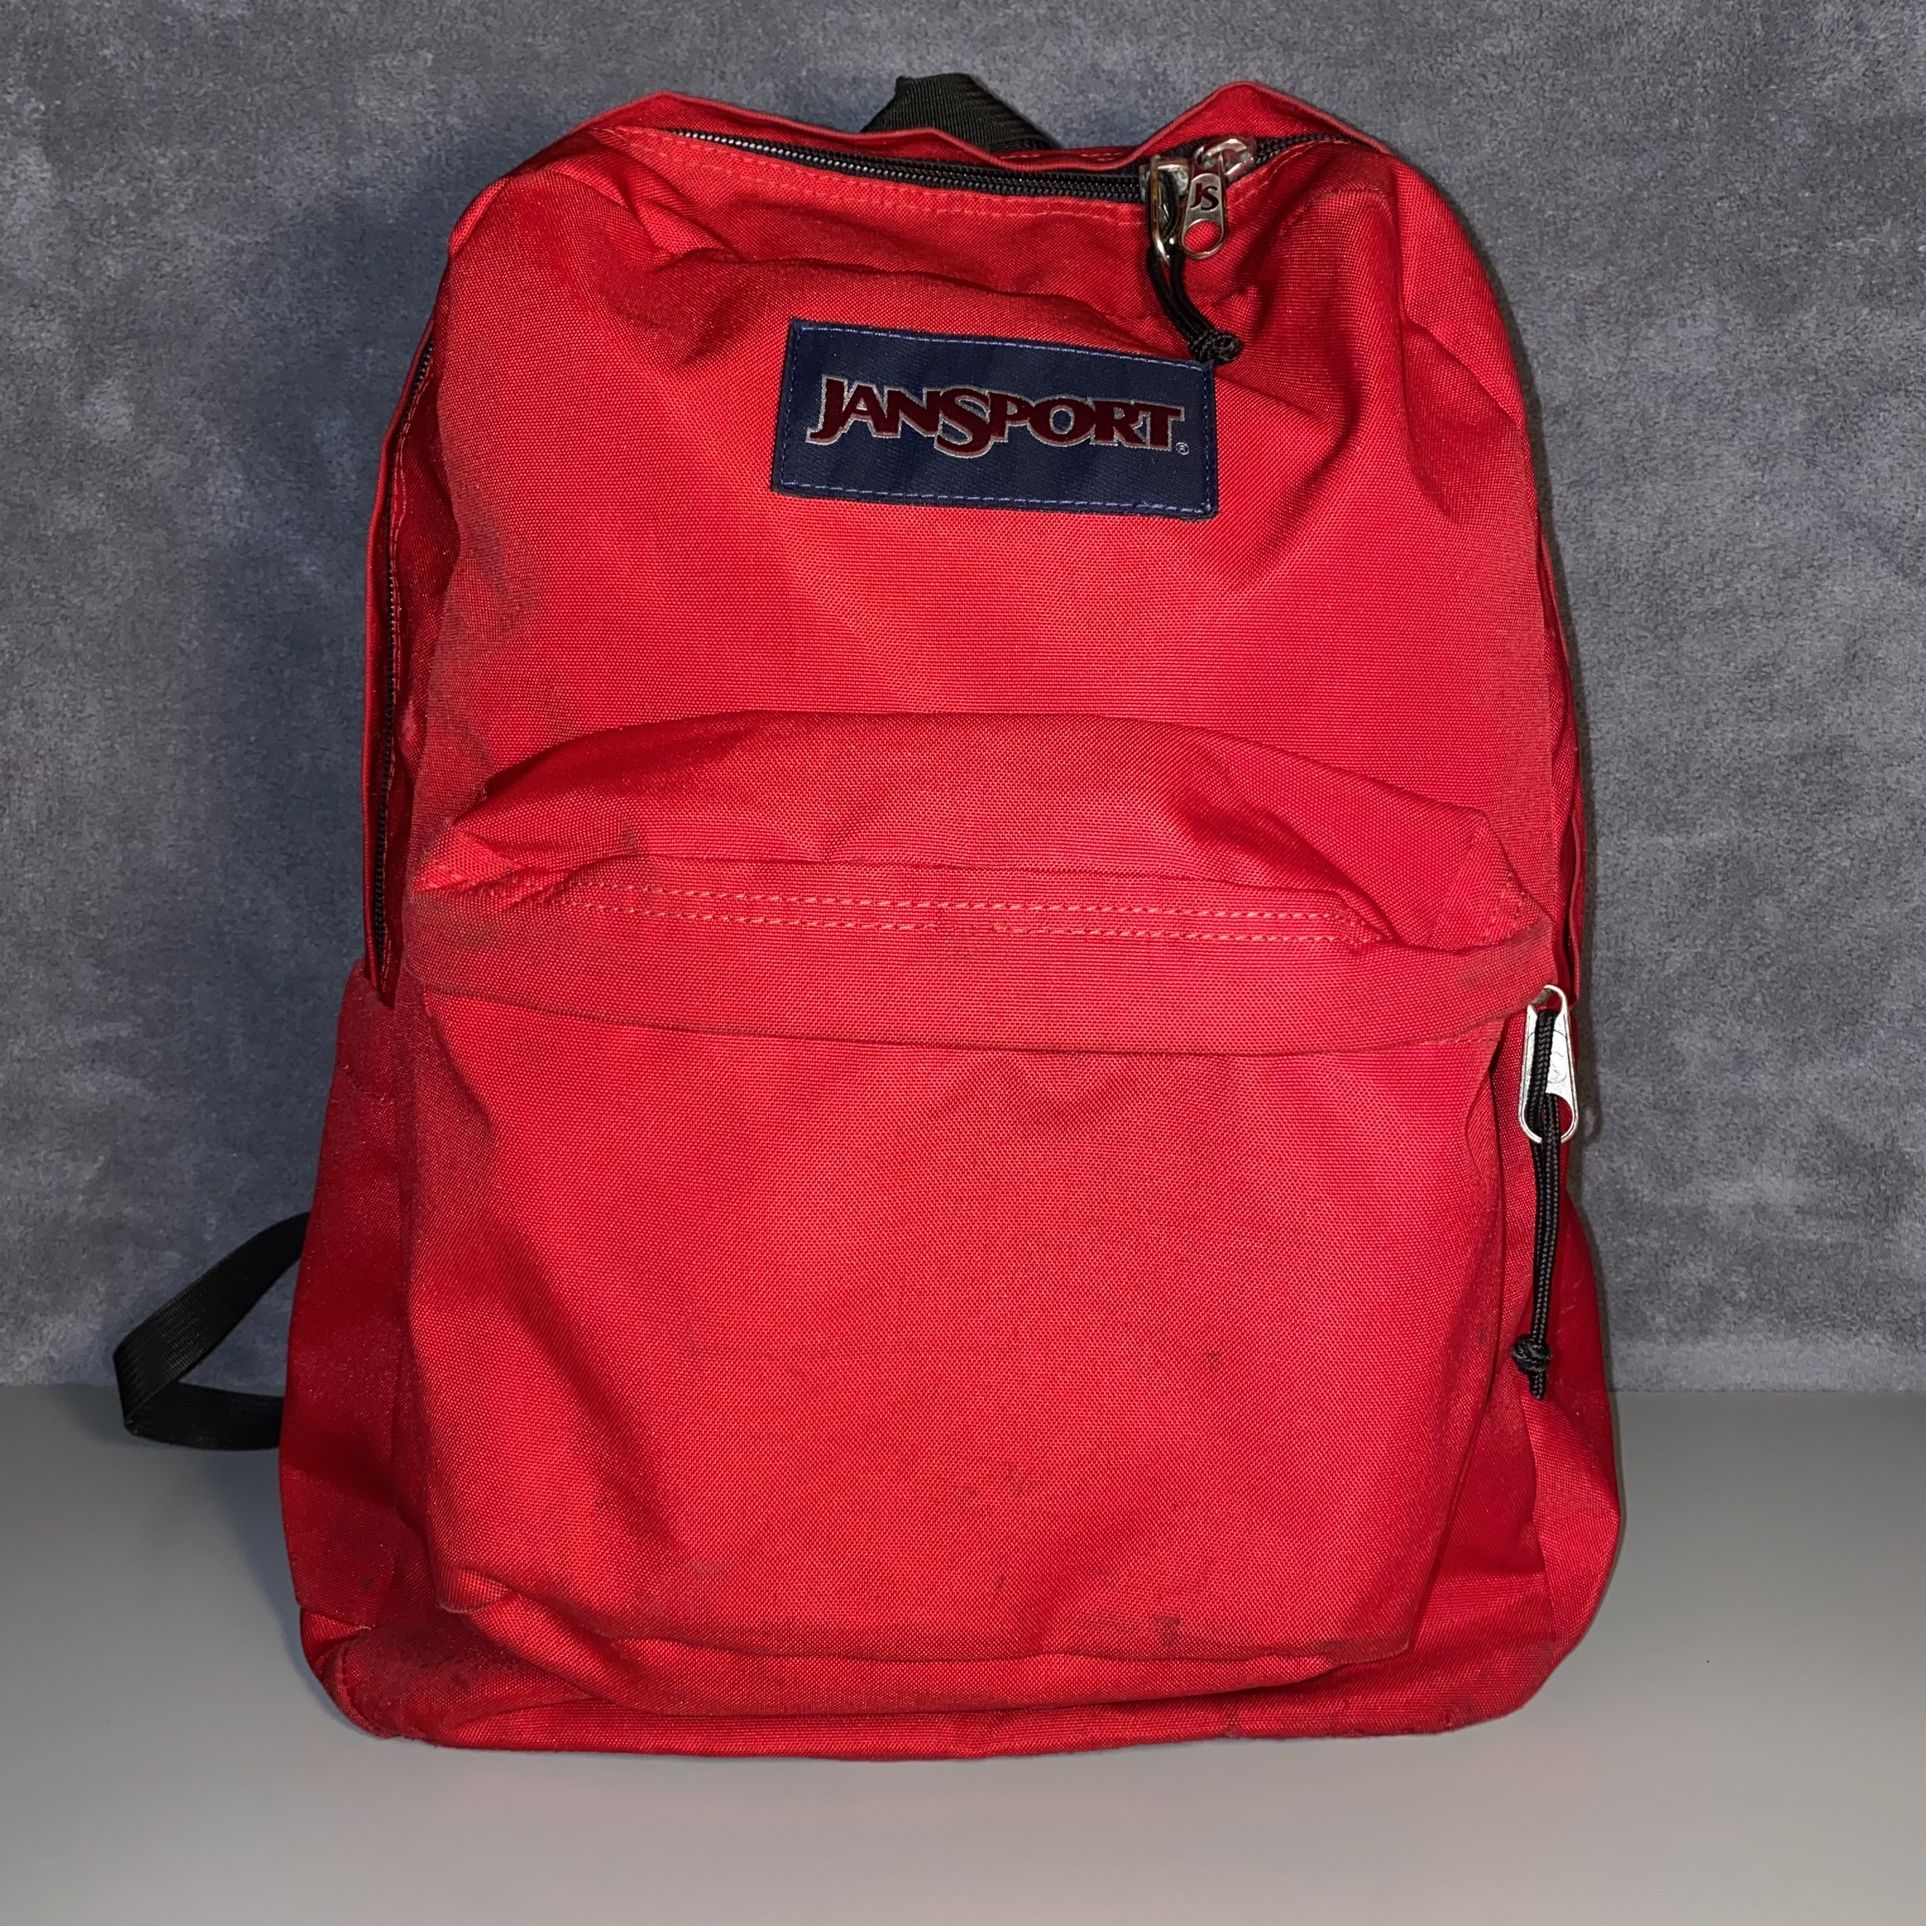 Jansport Red Backpack Bookbag - Used